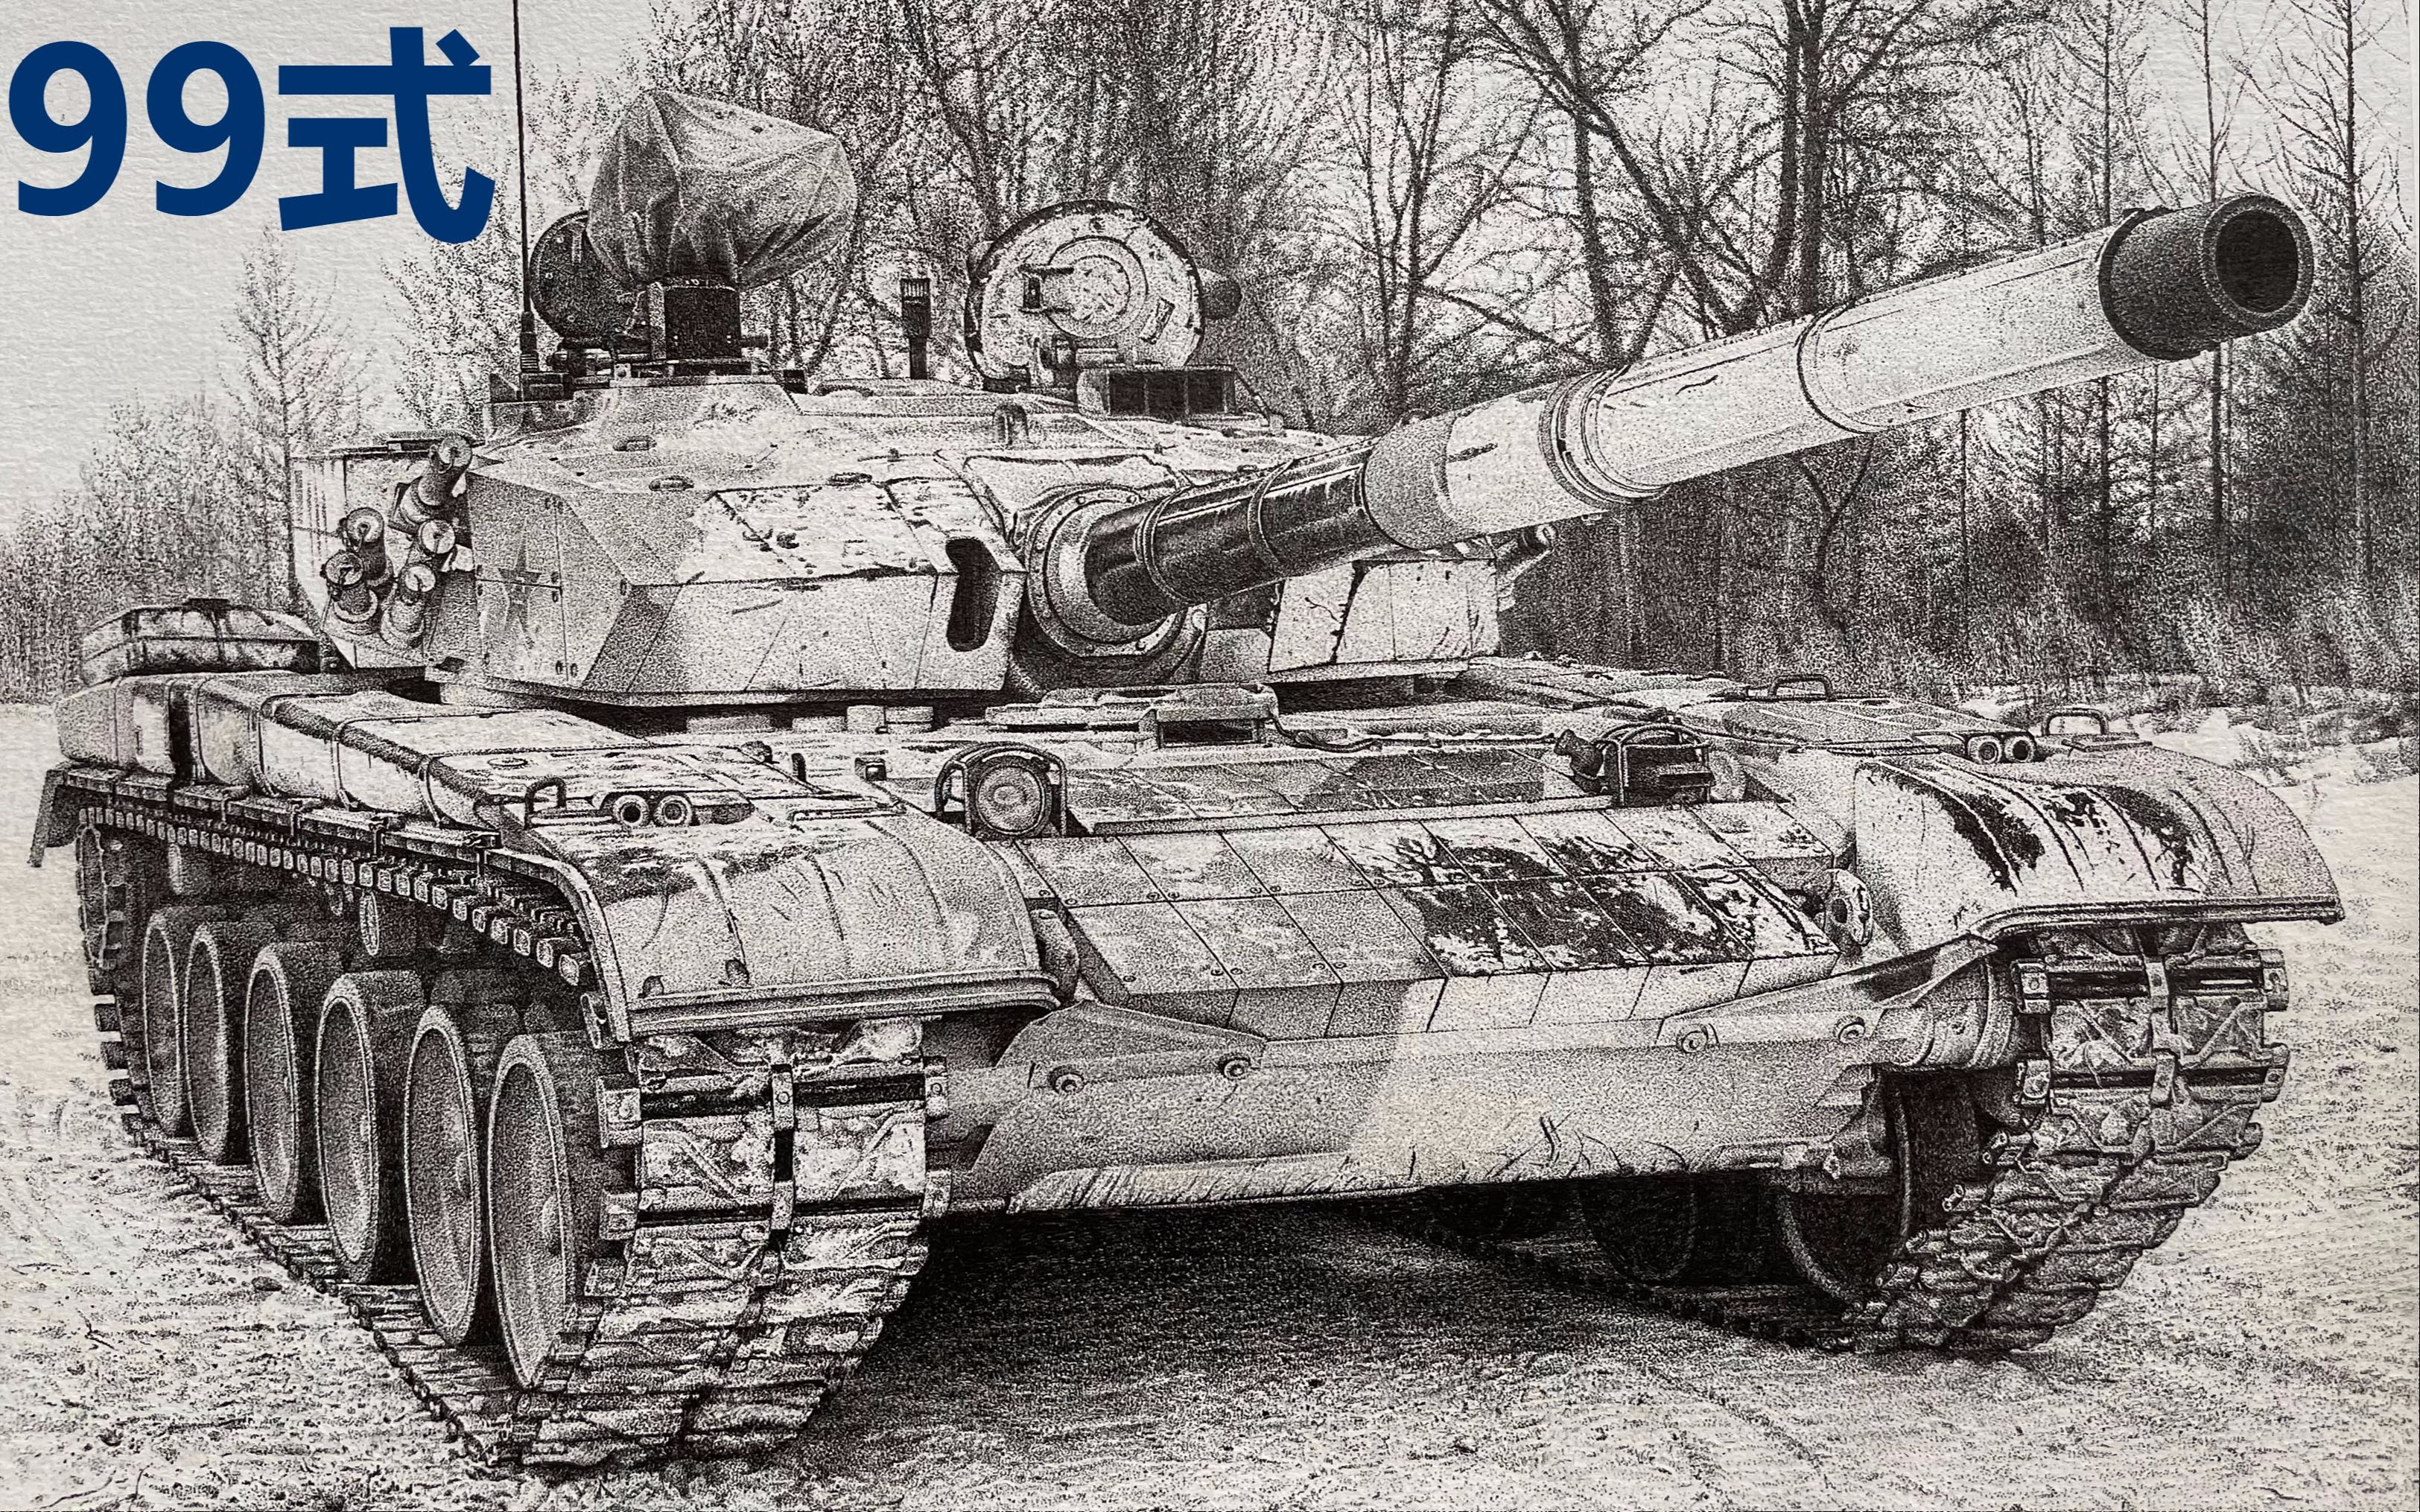 素描中性笔点绘雪地涂装99式主战坦克